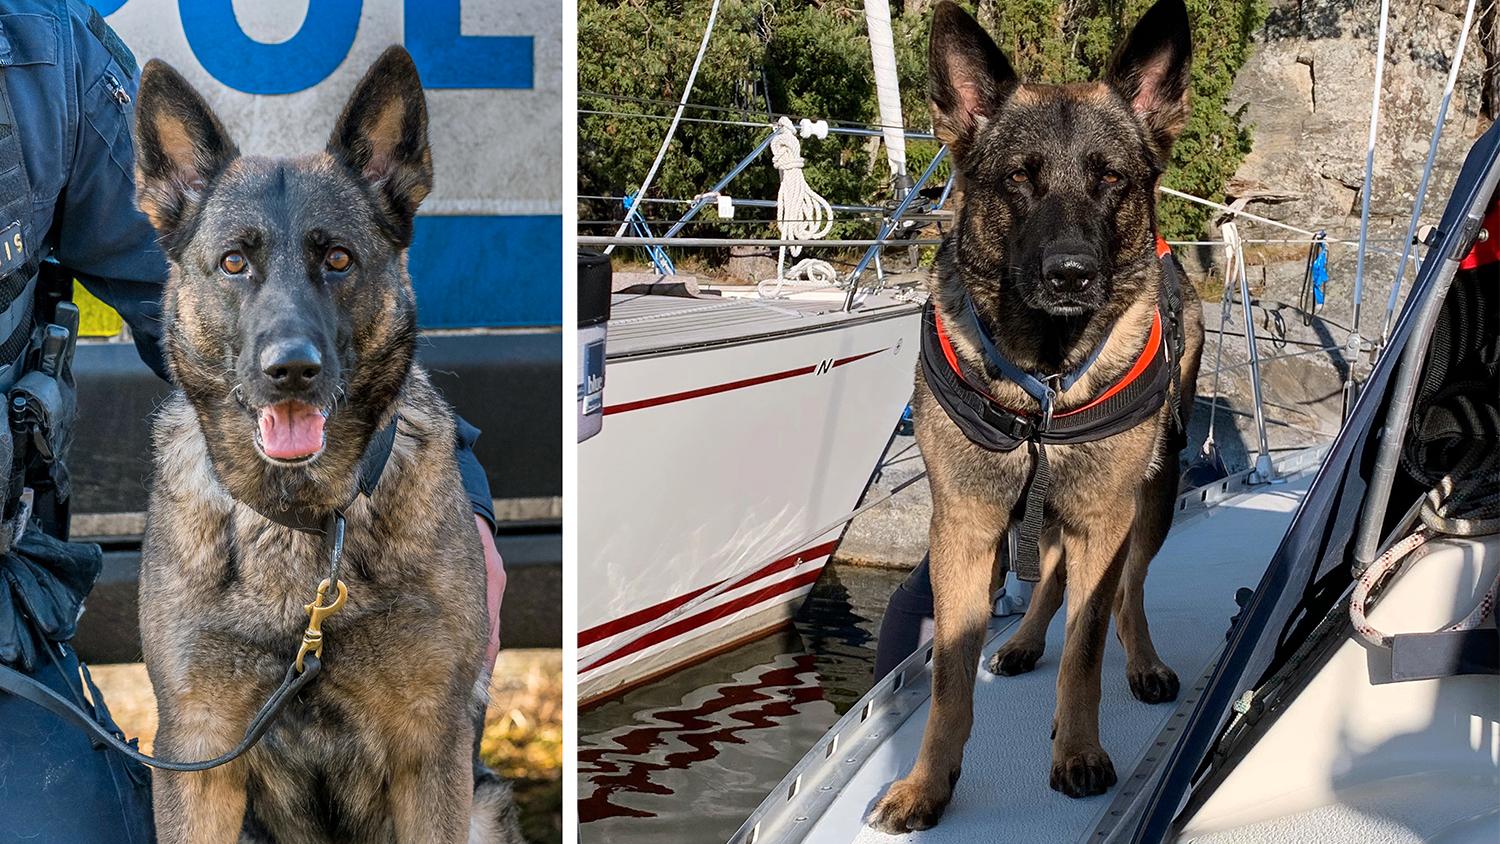 Från polishund till båtshund. Magda arbetade fram till förra året som polishund. Numera är hon pensionär men det hindrar henne inte från att fortsätta göra viktiga insatser i samhället.